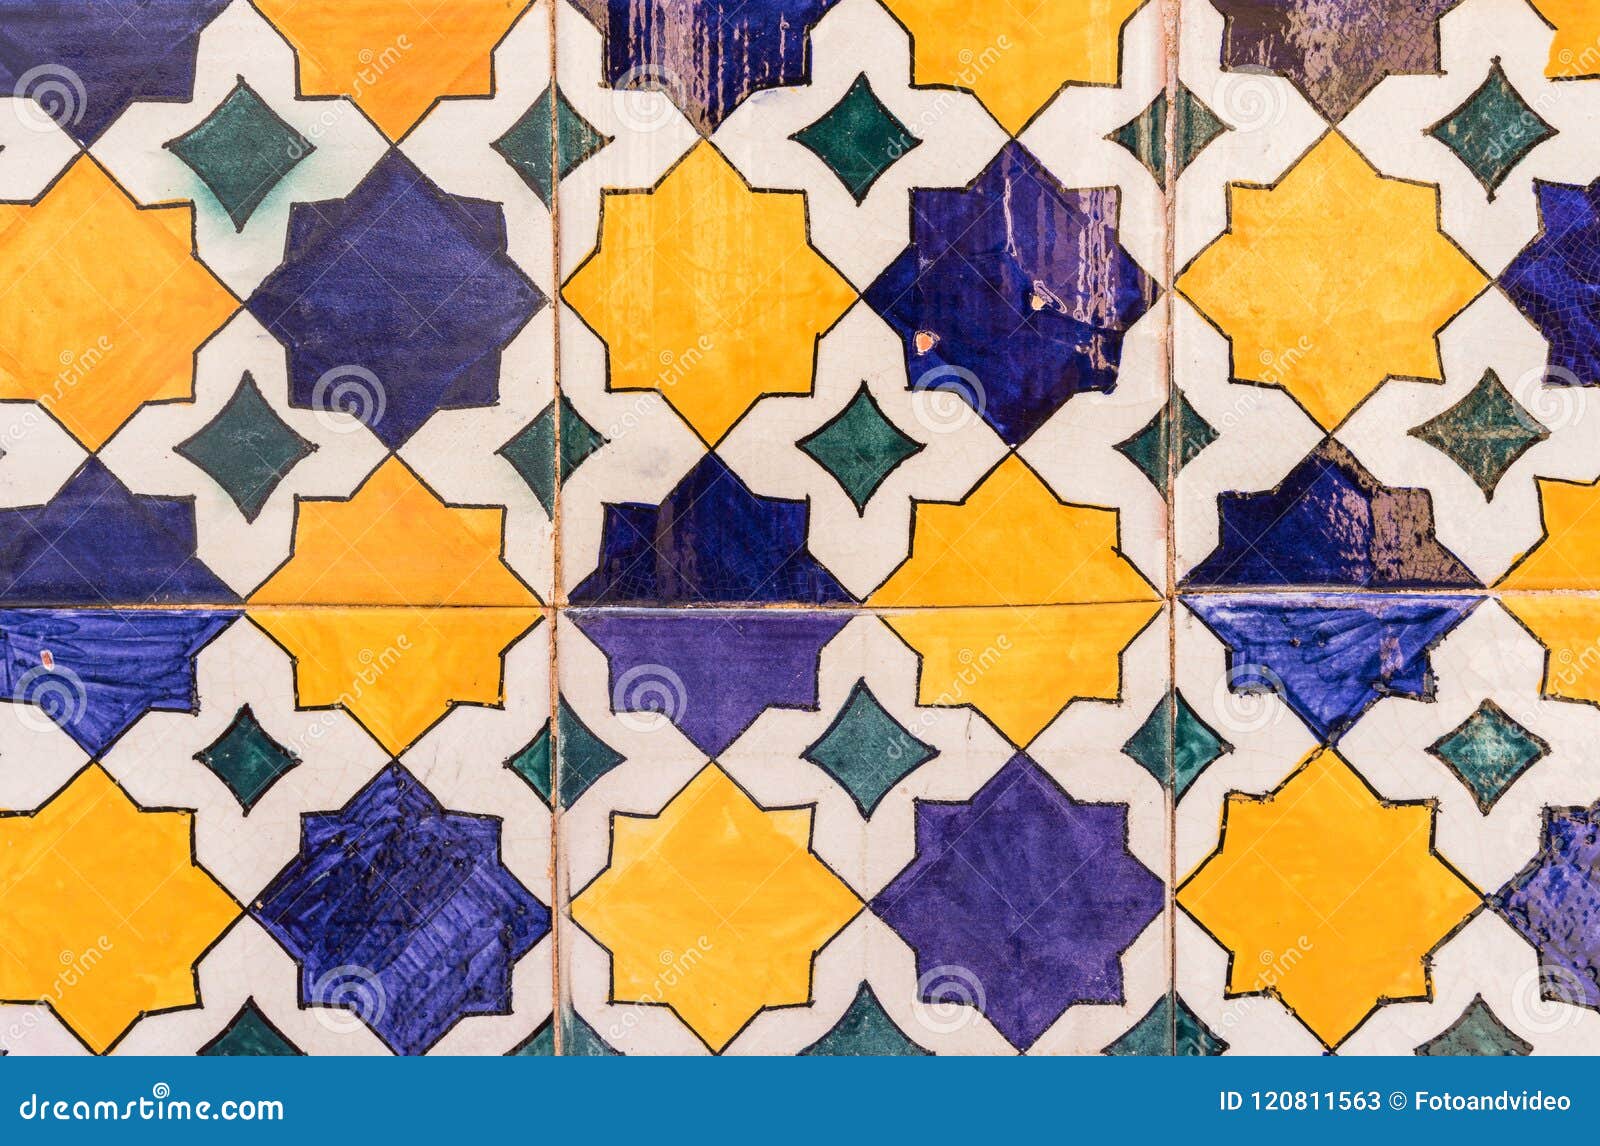 Levantina瓷砖，西班牙瓷砖品牌的先进技术-易美居